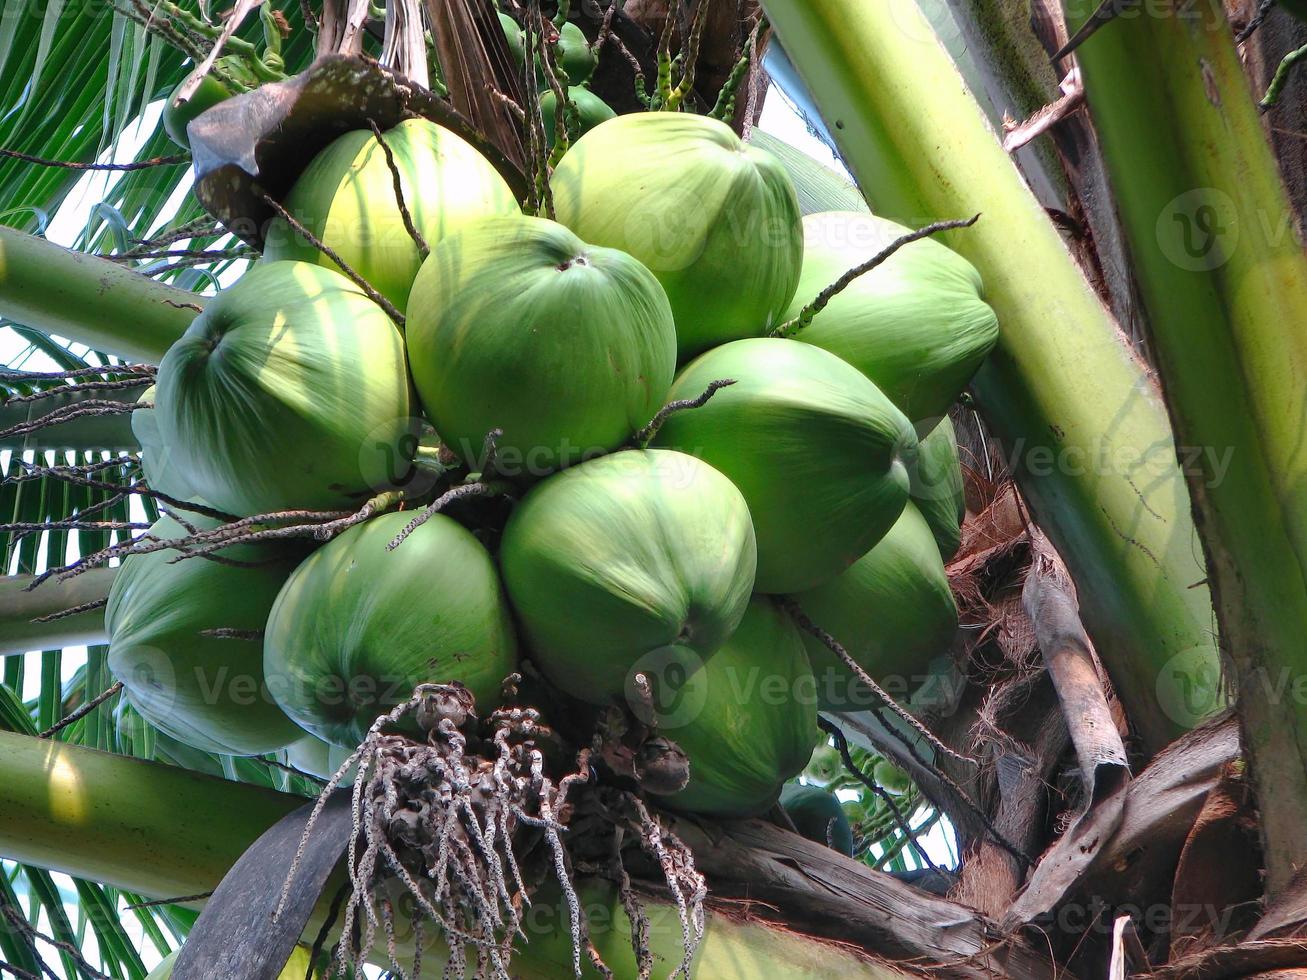 close-up verse tropische jonge groene kokosnoten aan de bomen foto